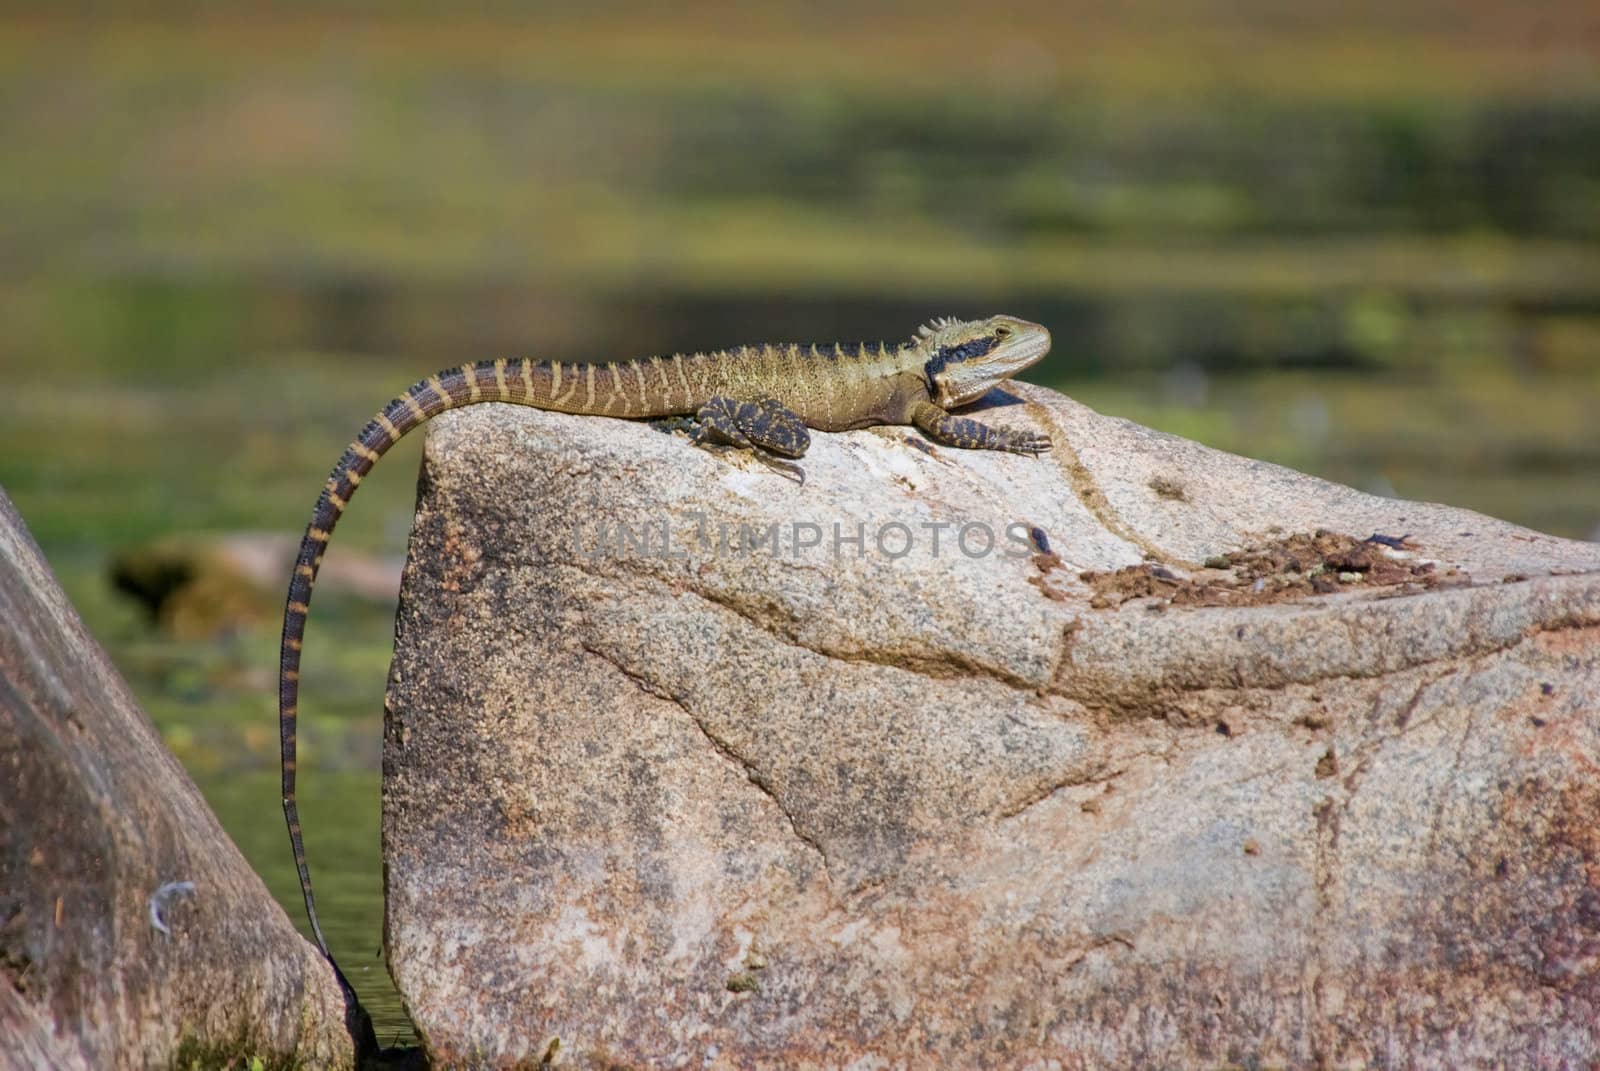 dragon lizard on rock by clearviewstock